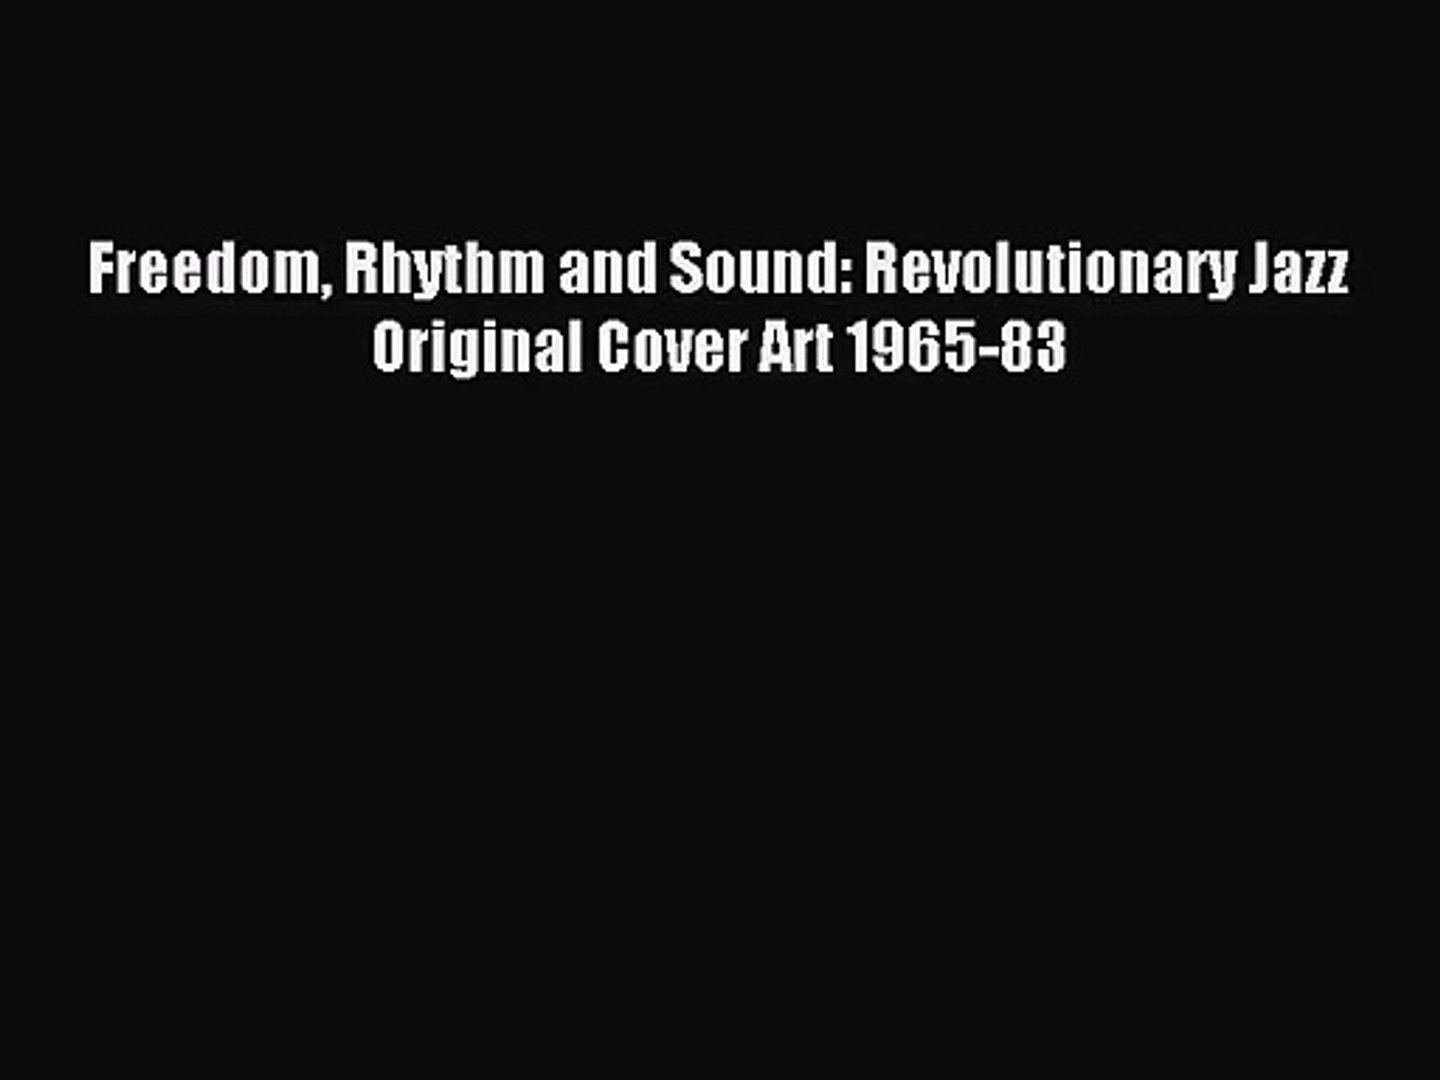 Pdf Download Freedom Rhythm And Sound Revolutionary Jazz Original Cover Art 1965 83 Pdf - 